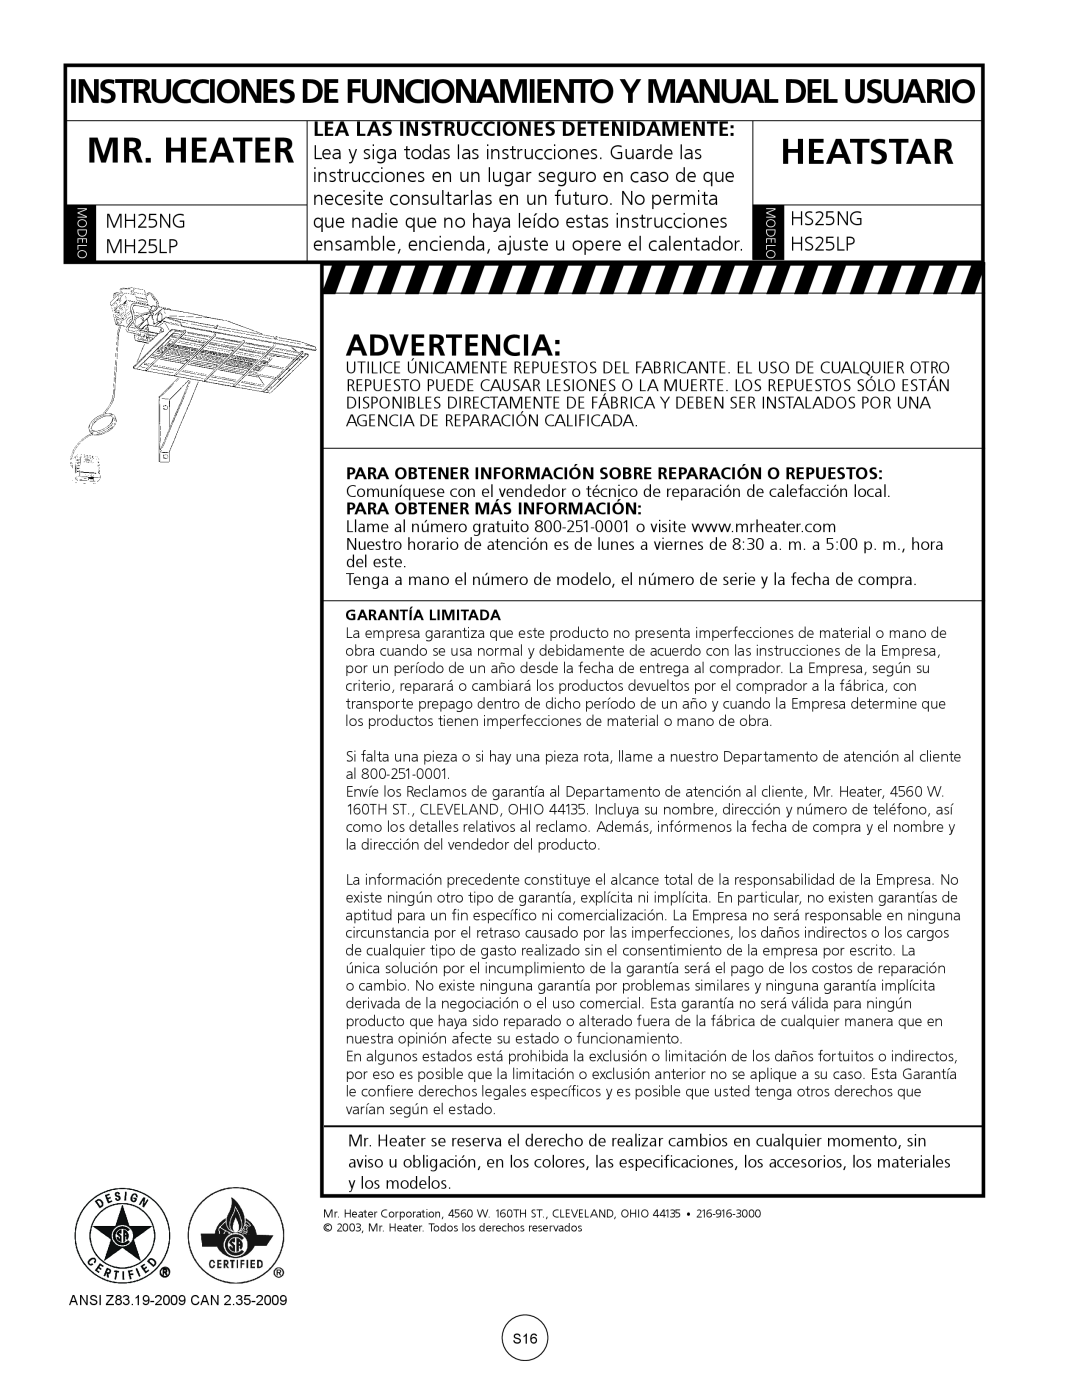 Mr. Heater MH25NG/LP Instruccionesde Funcionamientoy Manualdel Usuario, Advertencia, Heatstar, Mr. Heater, MH25LP, HS25NG 